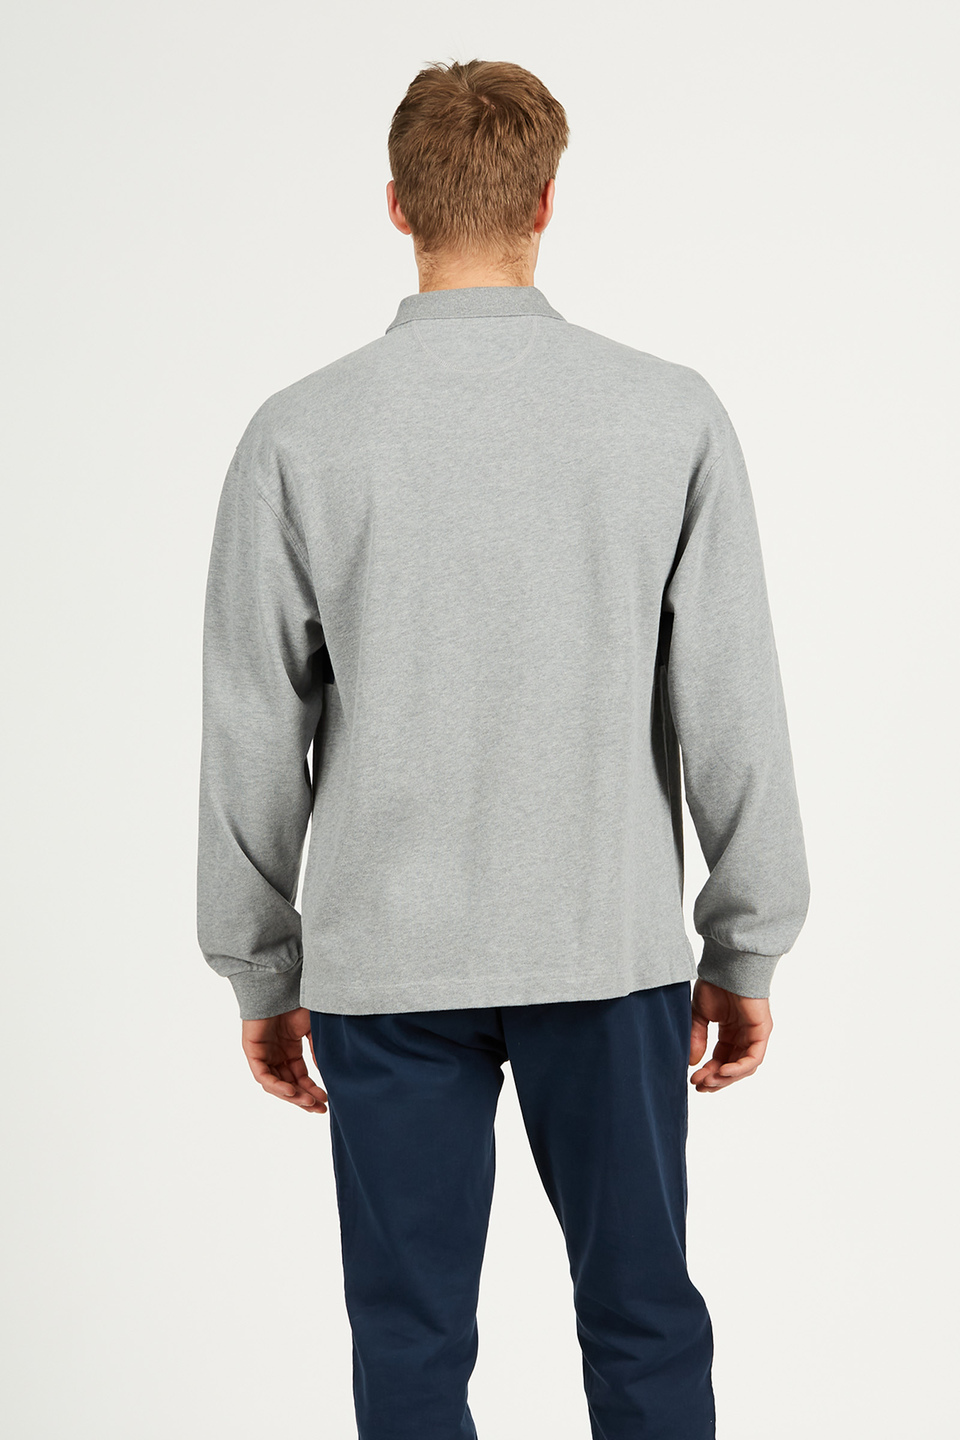 Polo homme en coton 100 % à manches longues, coupe confort | La Martina - Official Online Shop